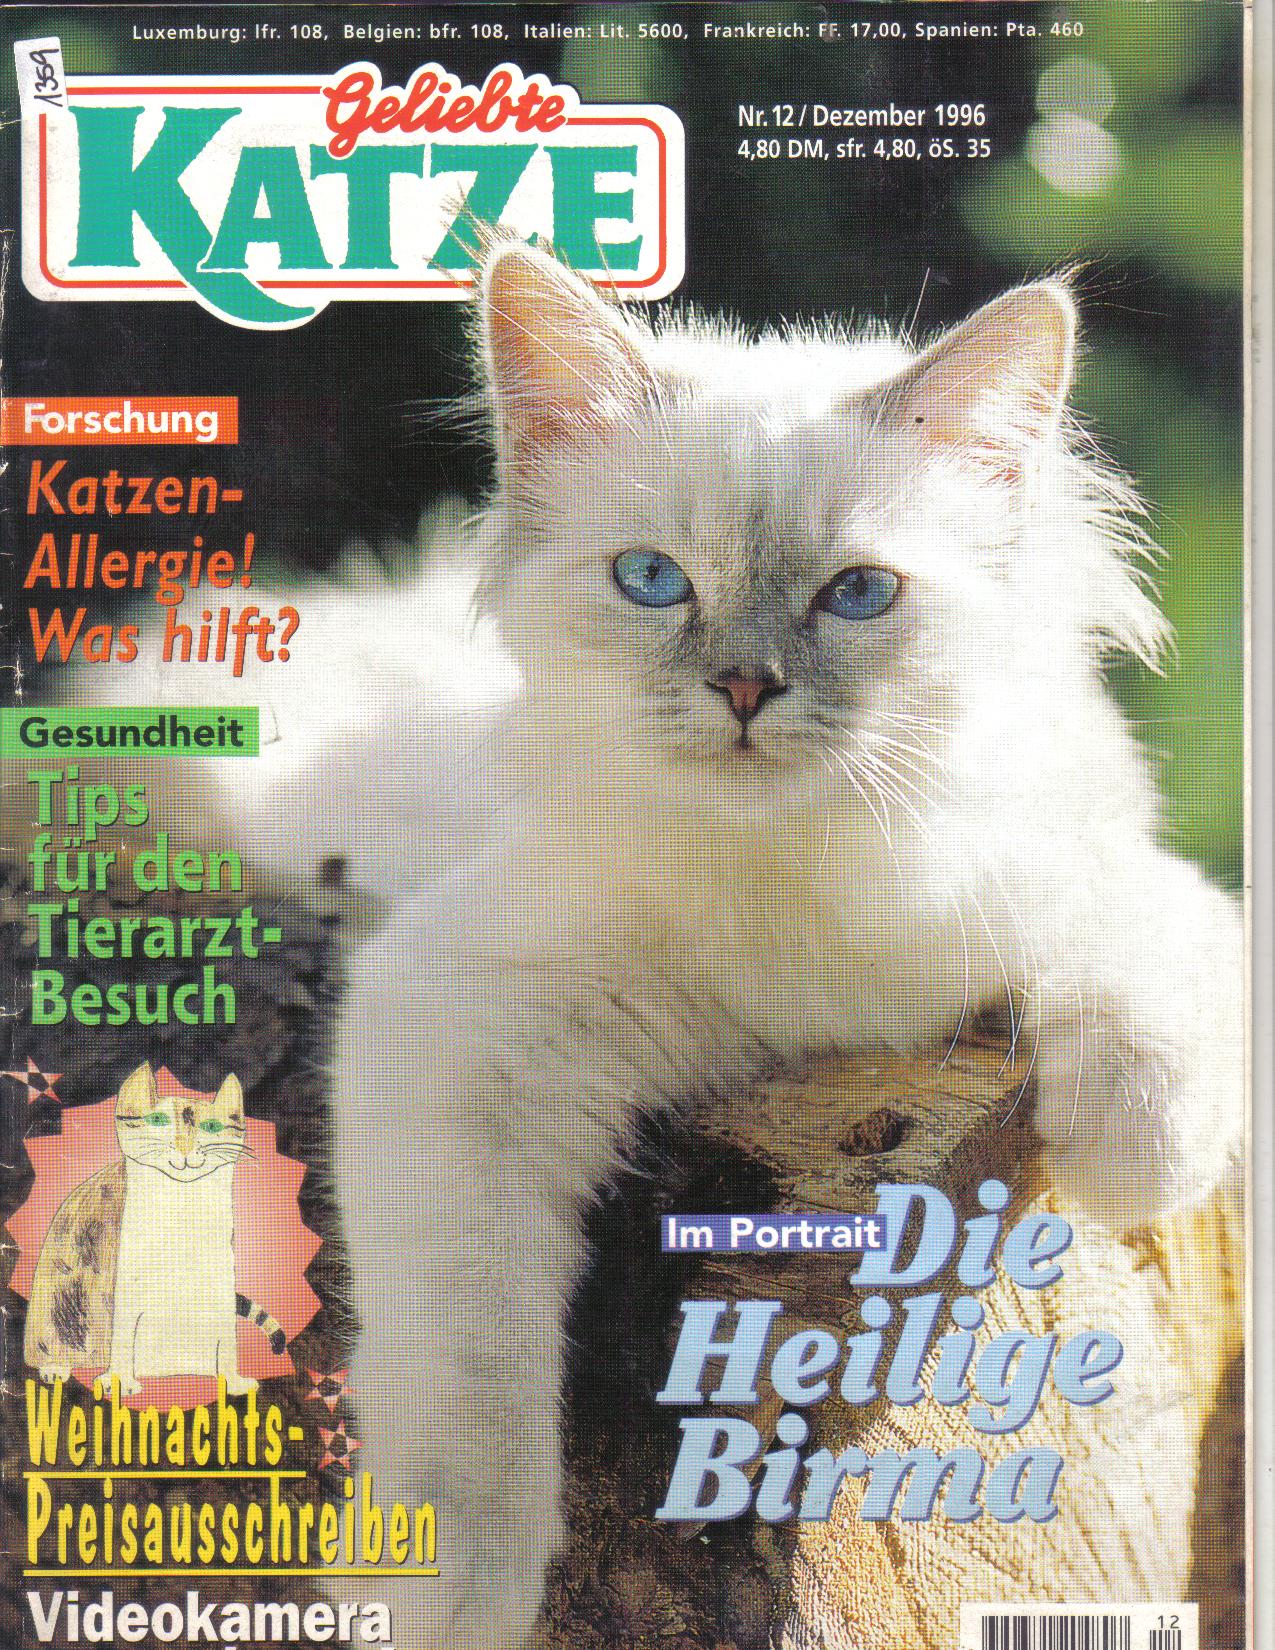 Geliebte  Katze Nr 12 / 1996